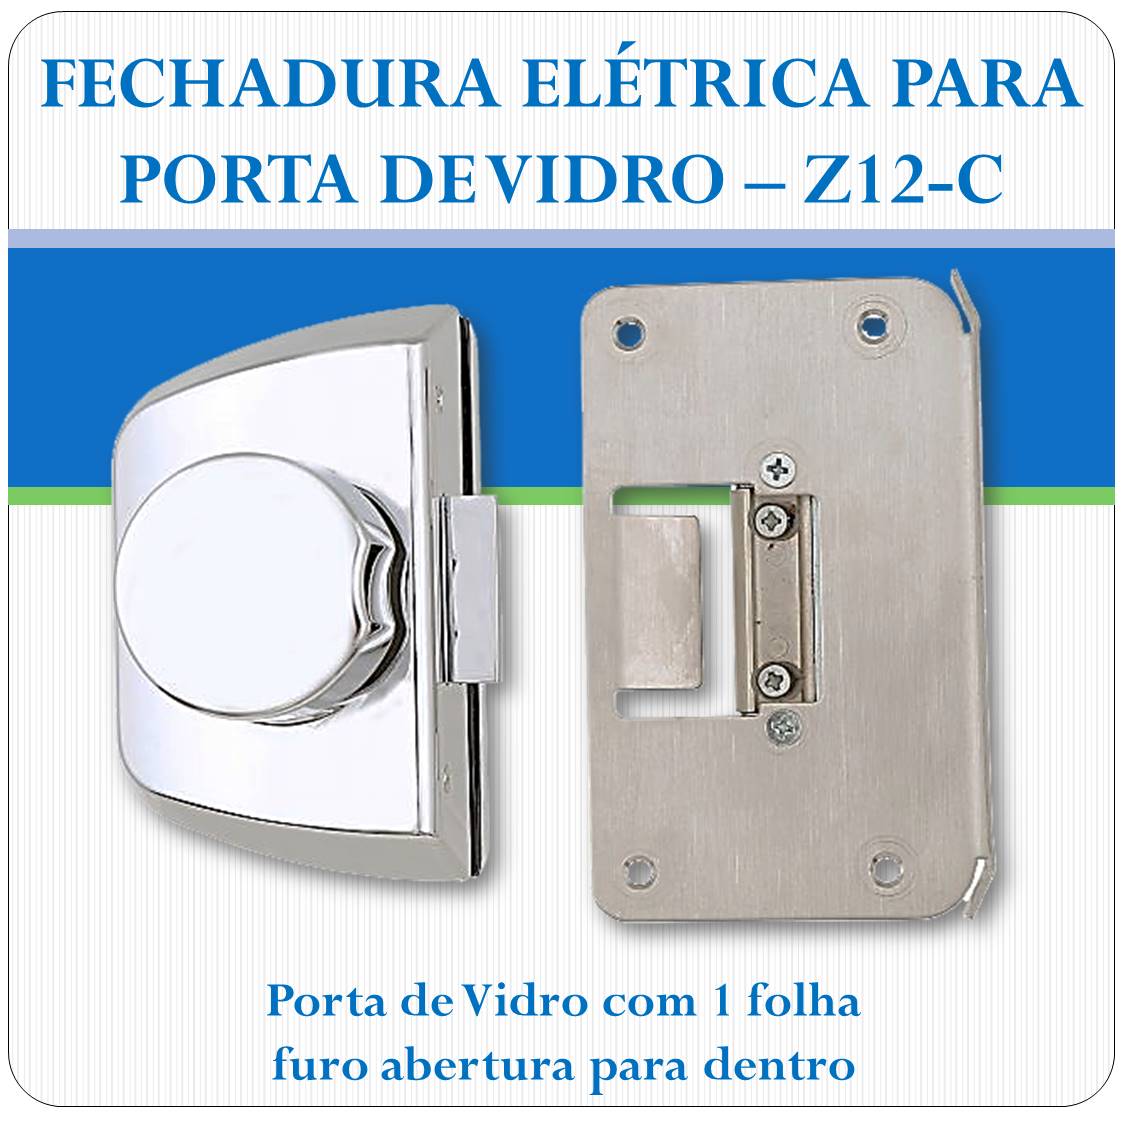 Fechadura Eletrica Porta de Vidro - Z-12C